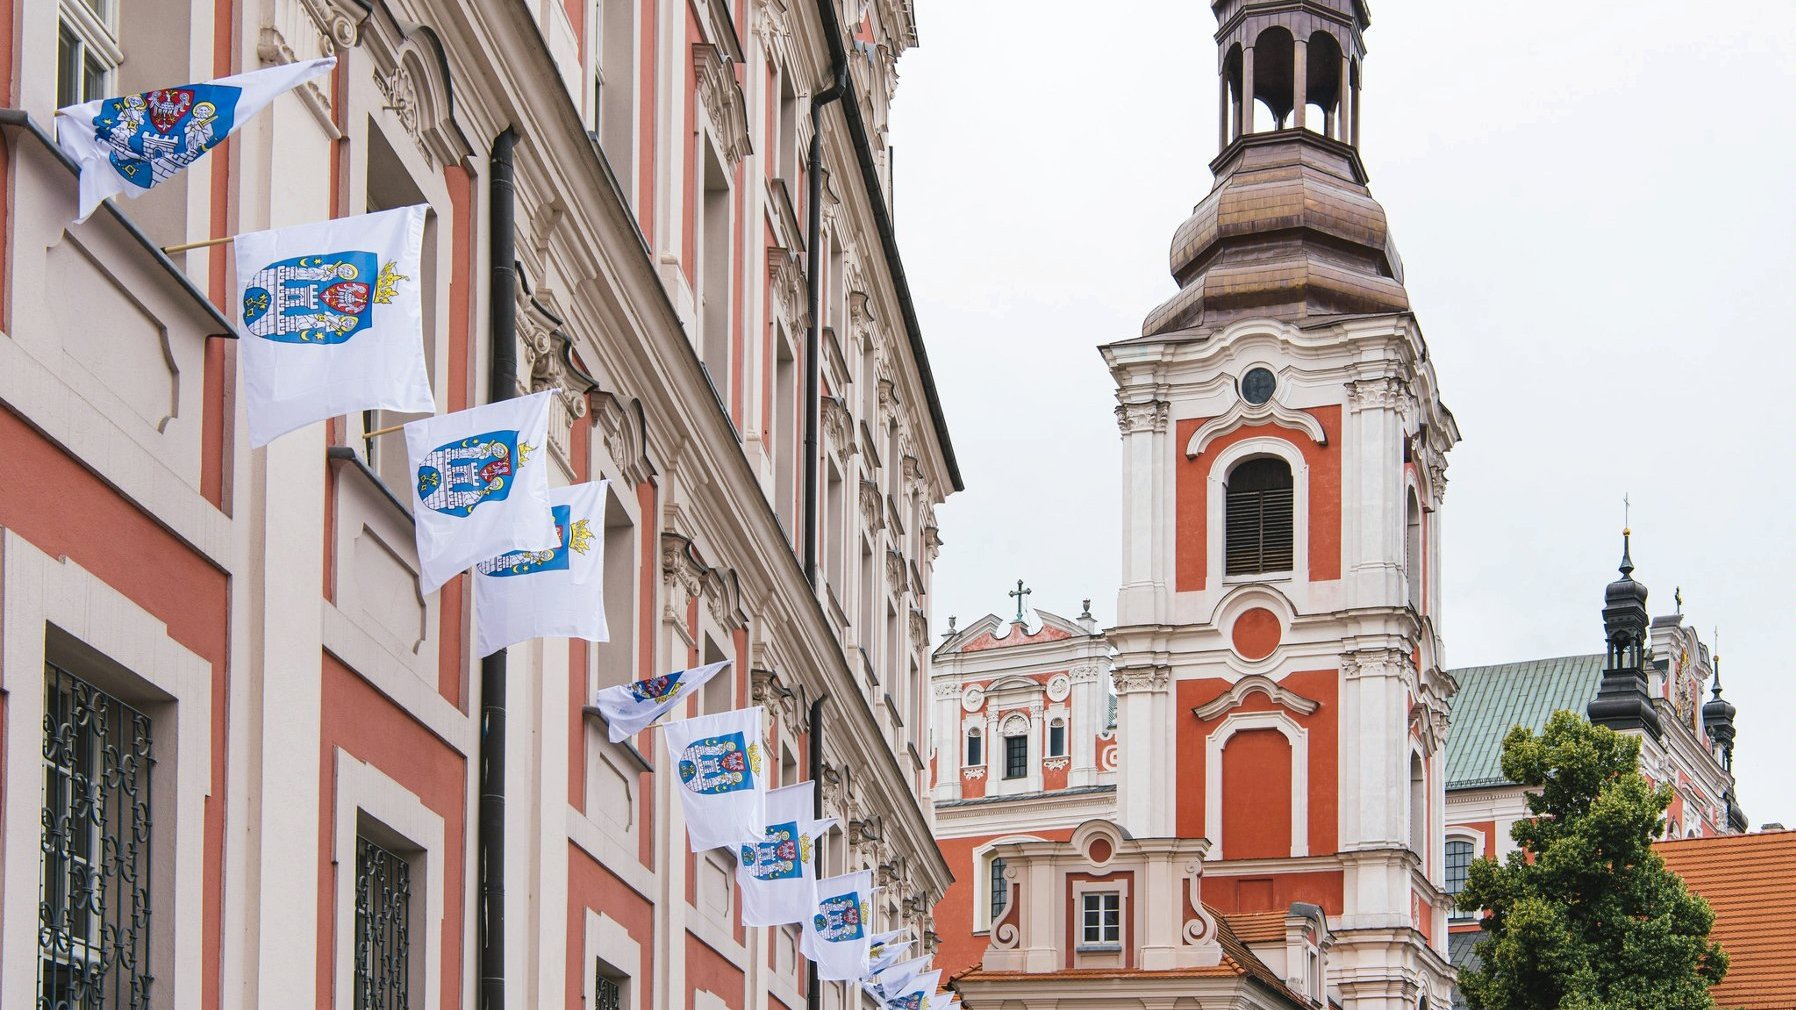 Zdjęcie przedstawia flagi z herbem miasta zawieszone na urzędzie.